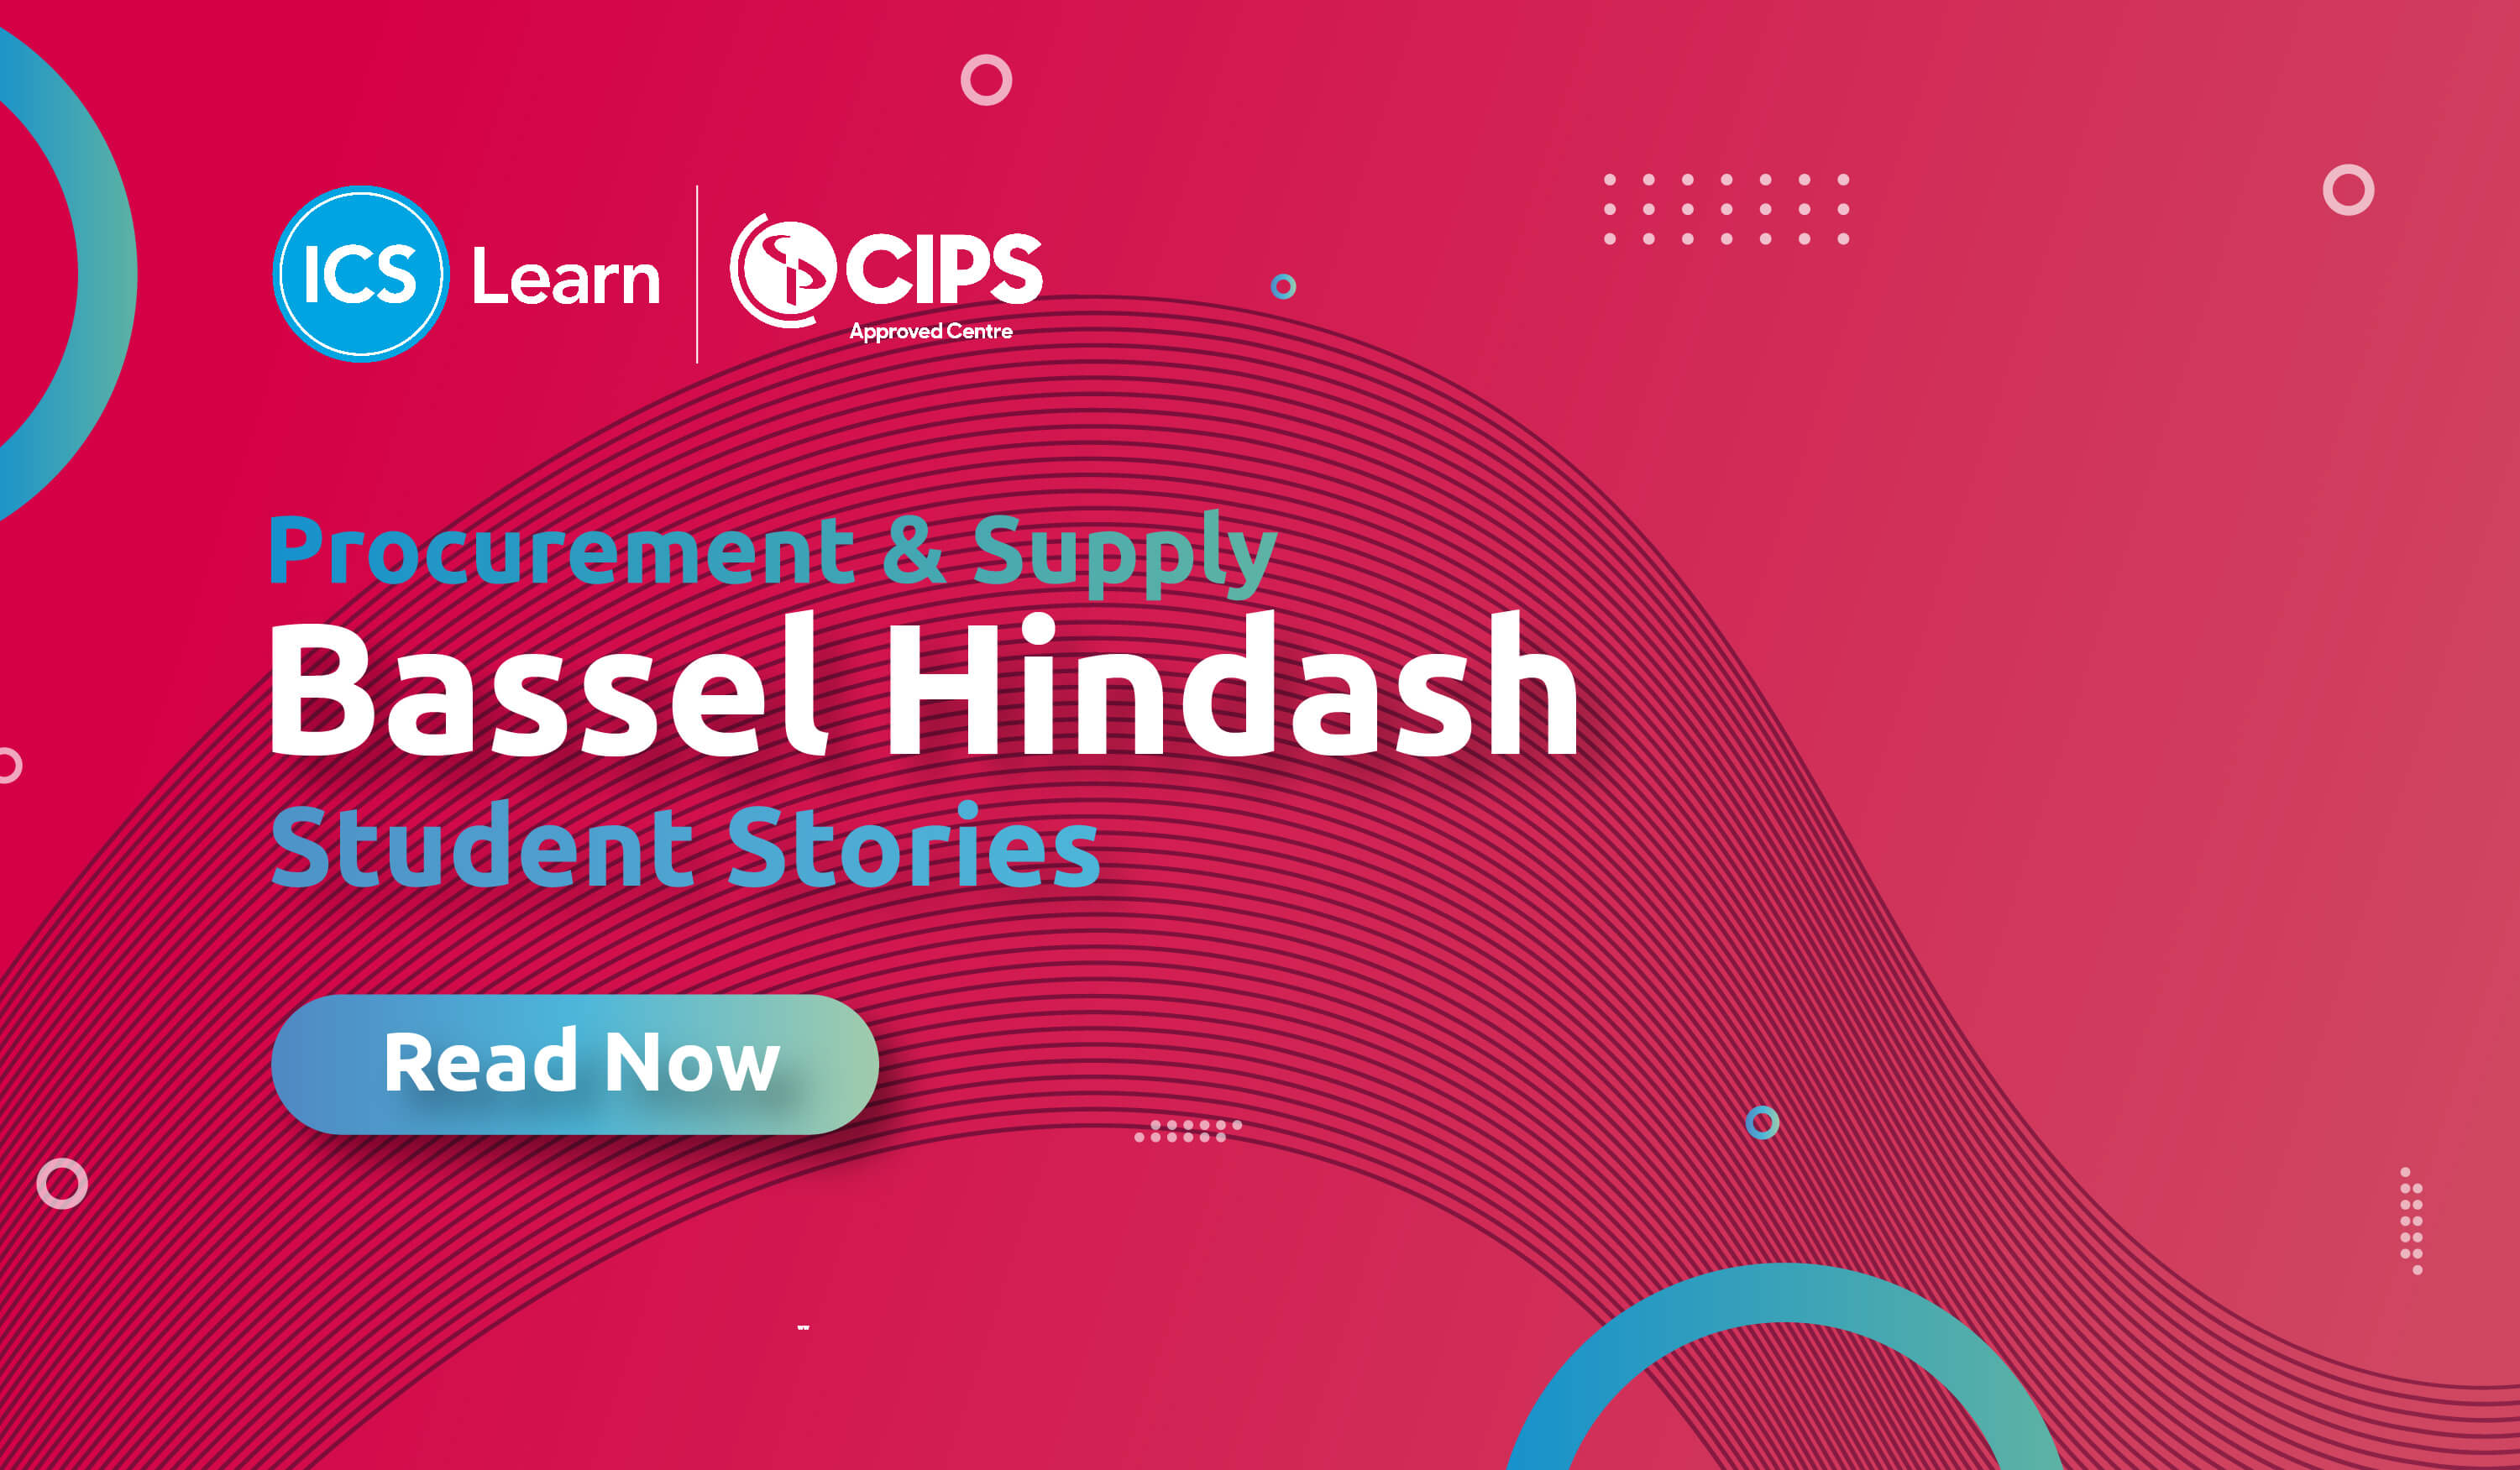 cips-student-stories-bassel-hindash-cips-level-4-review-procurement